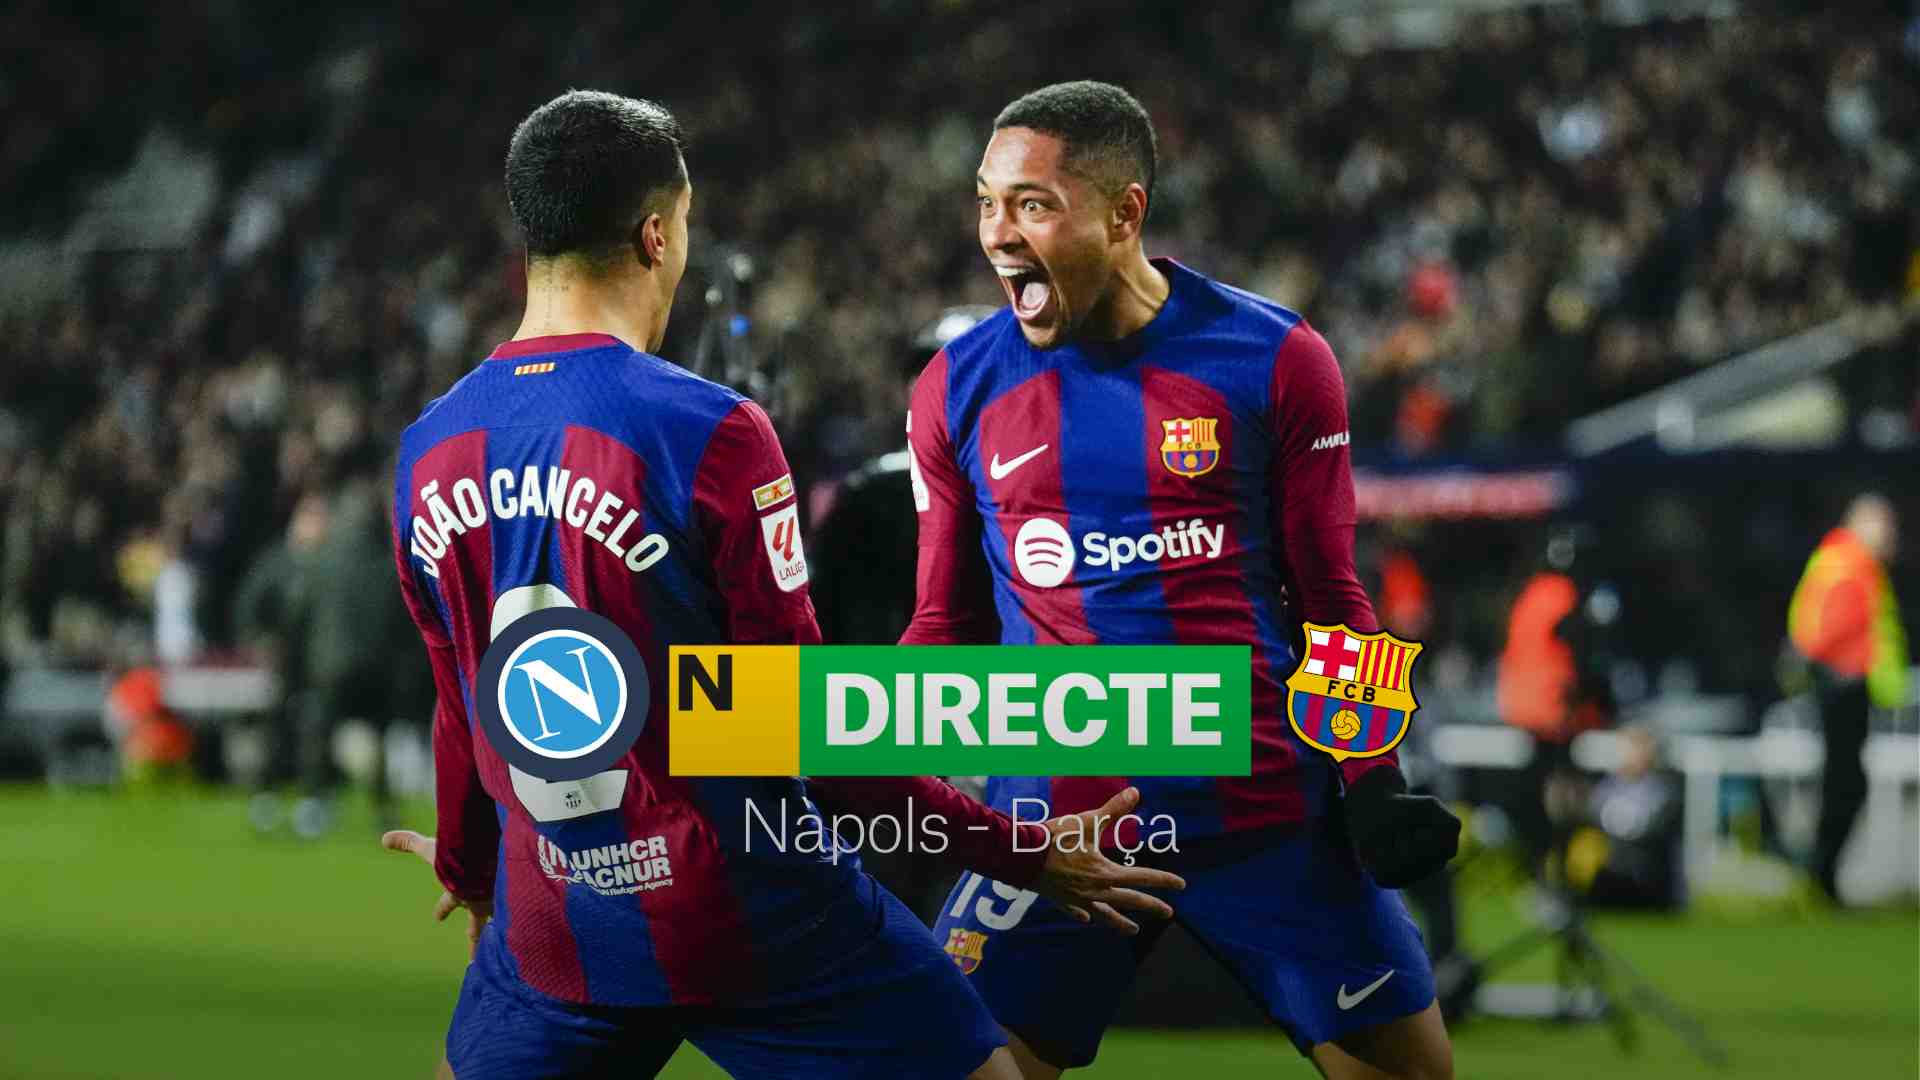 Nápoles - Barcelona de la Champions League, DIRECTO | Resultado, resumen y goles